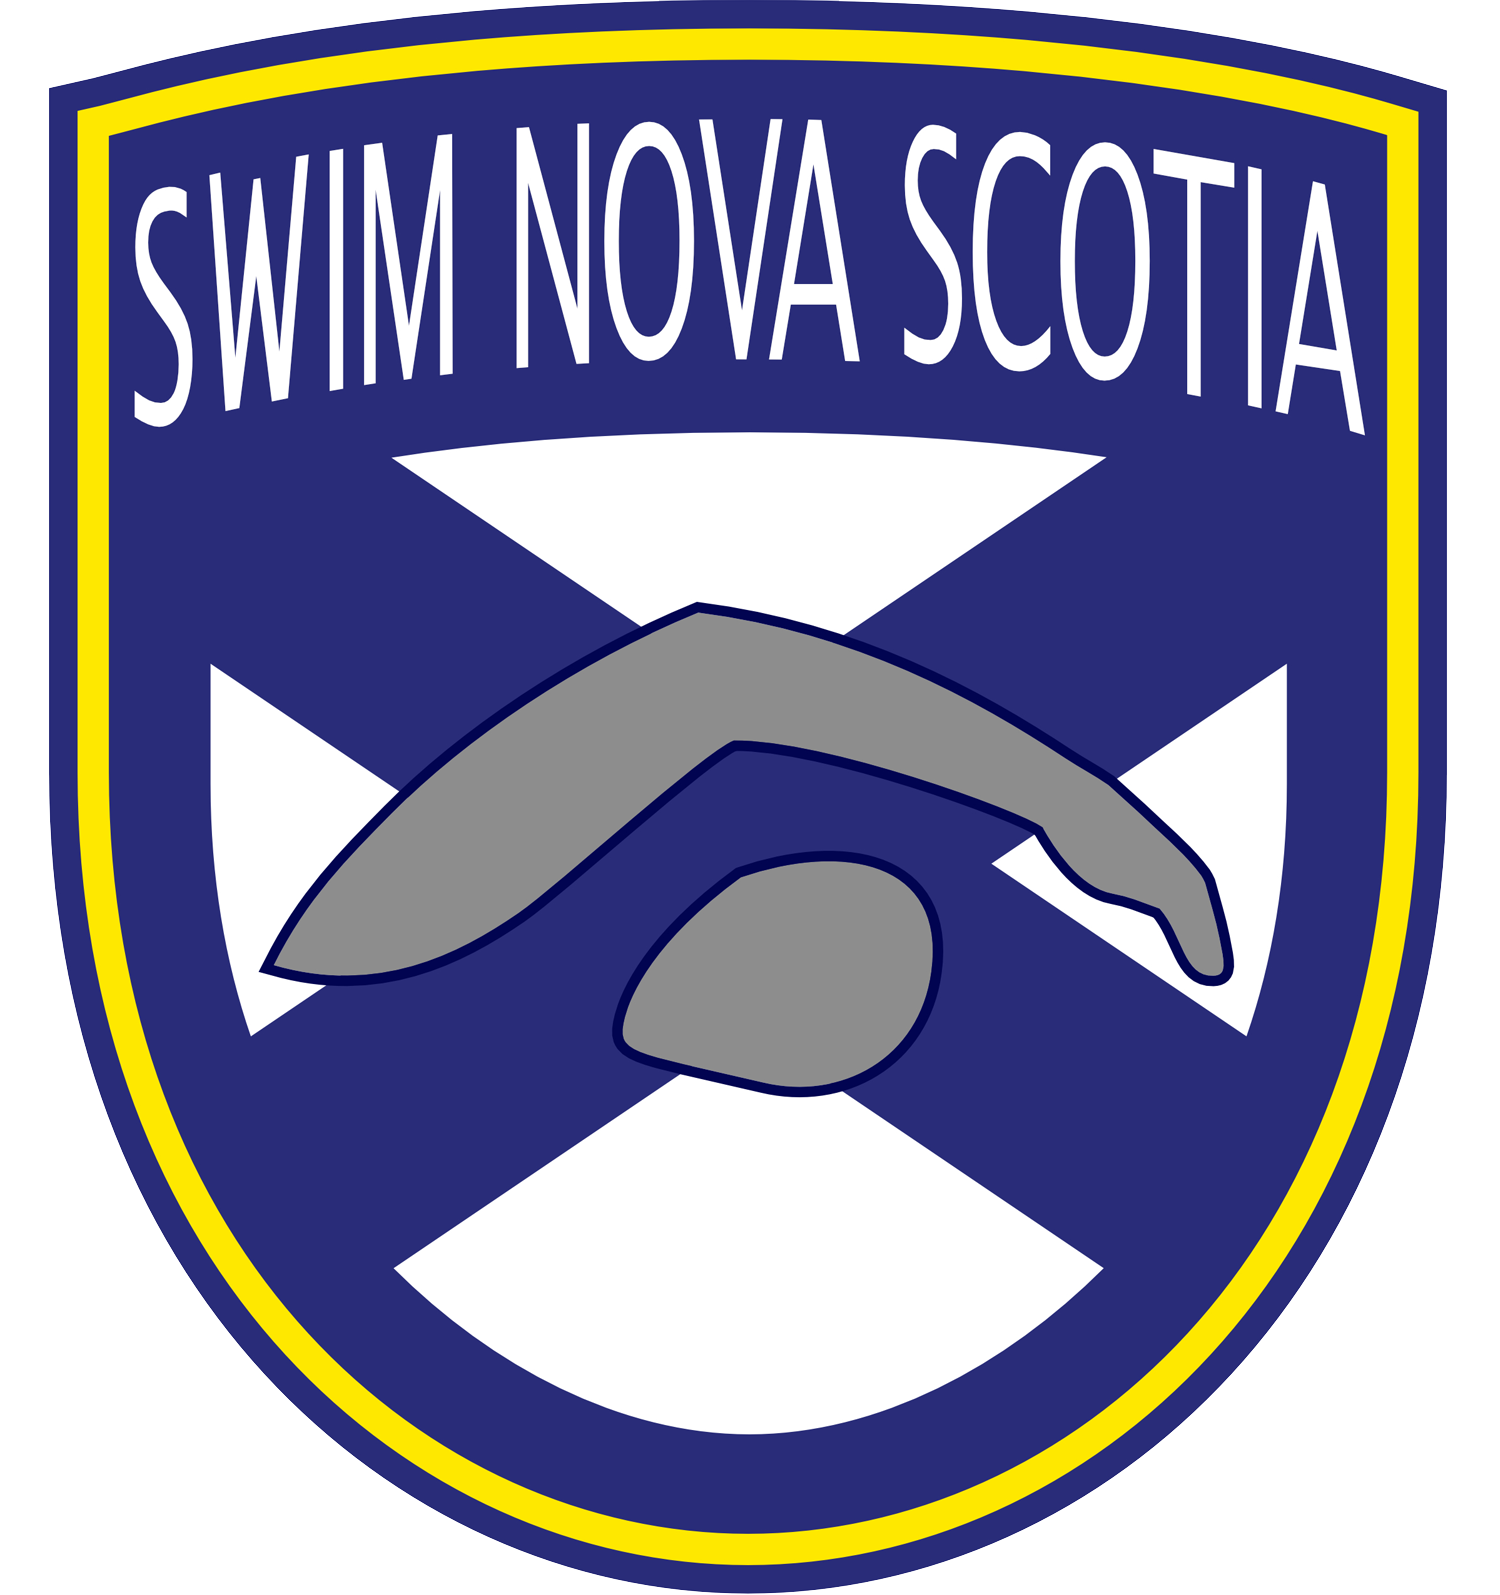 Swim Nova Scotia